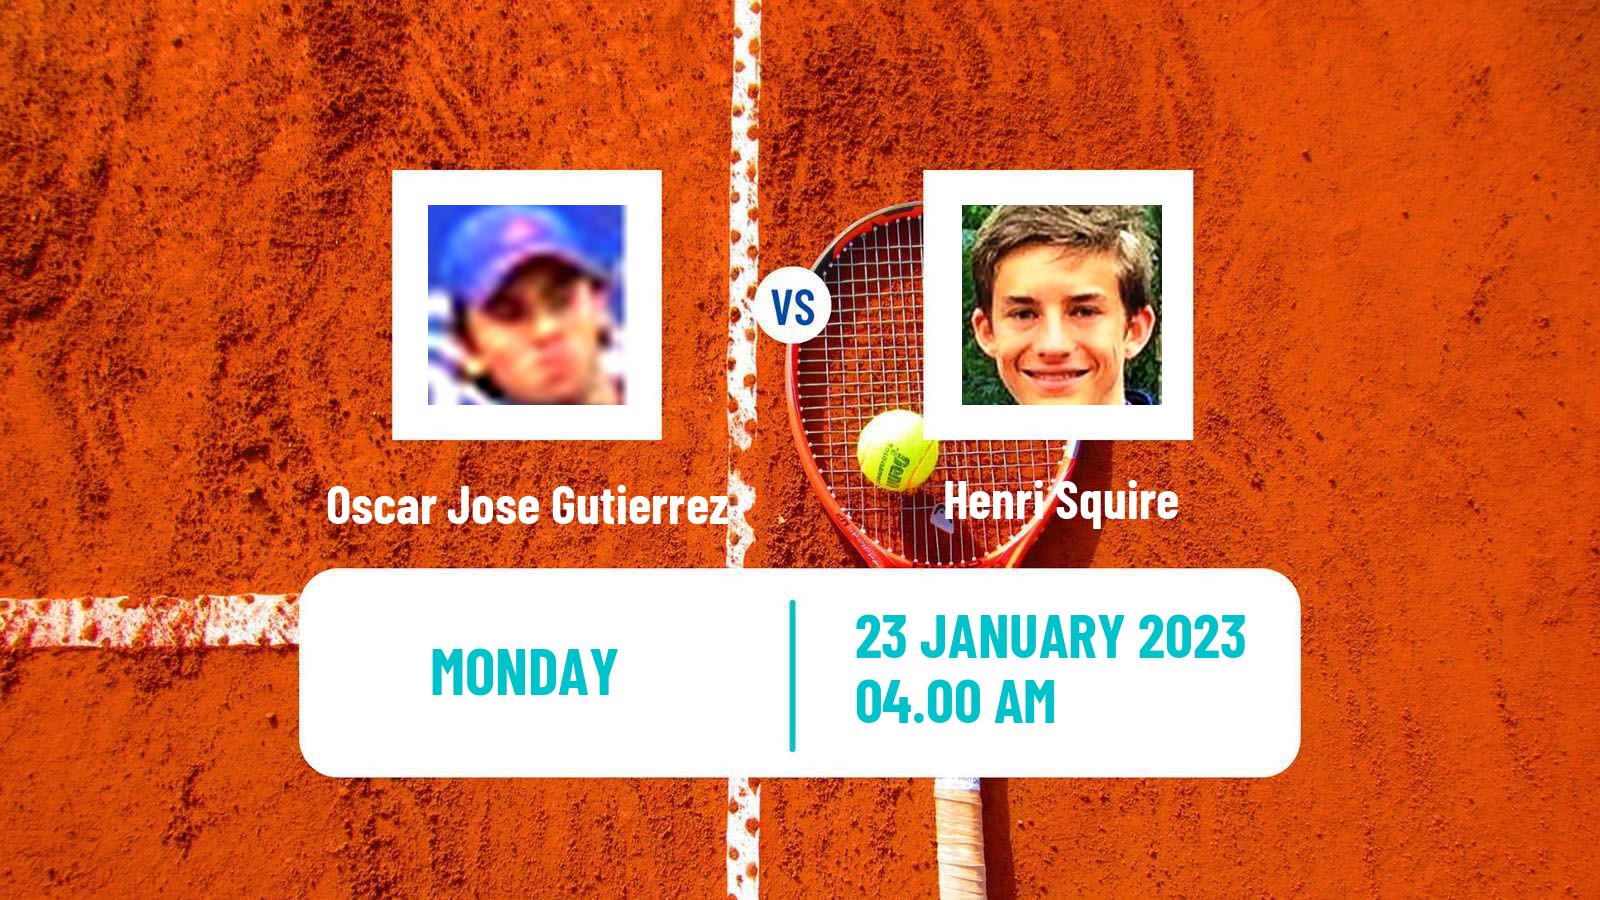 Tennis ATP Challenger Oscar Jose Gutierrez - Henri Squire